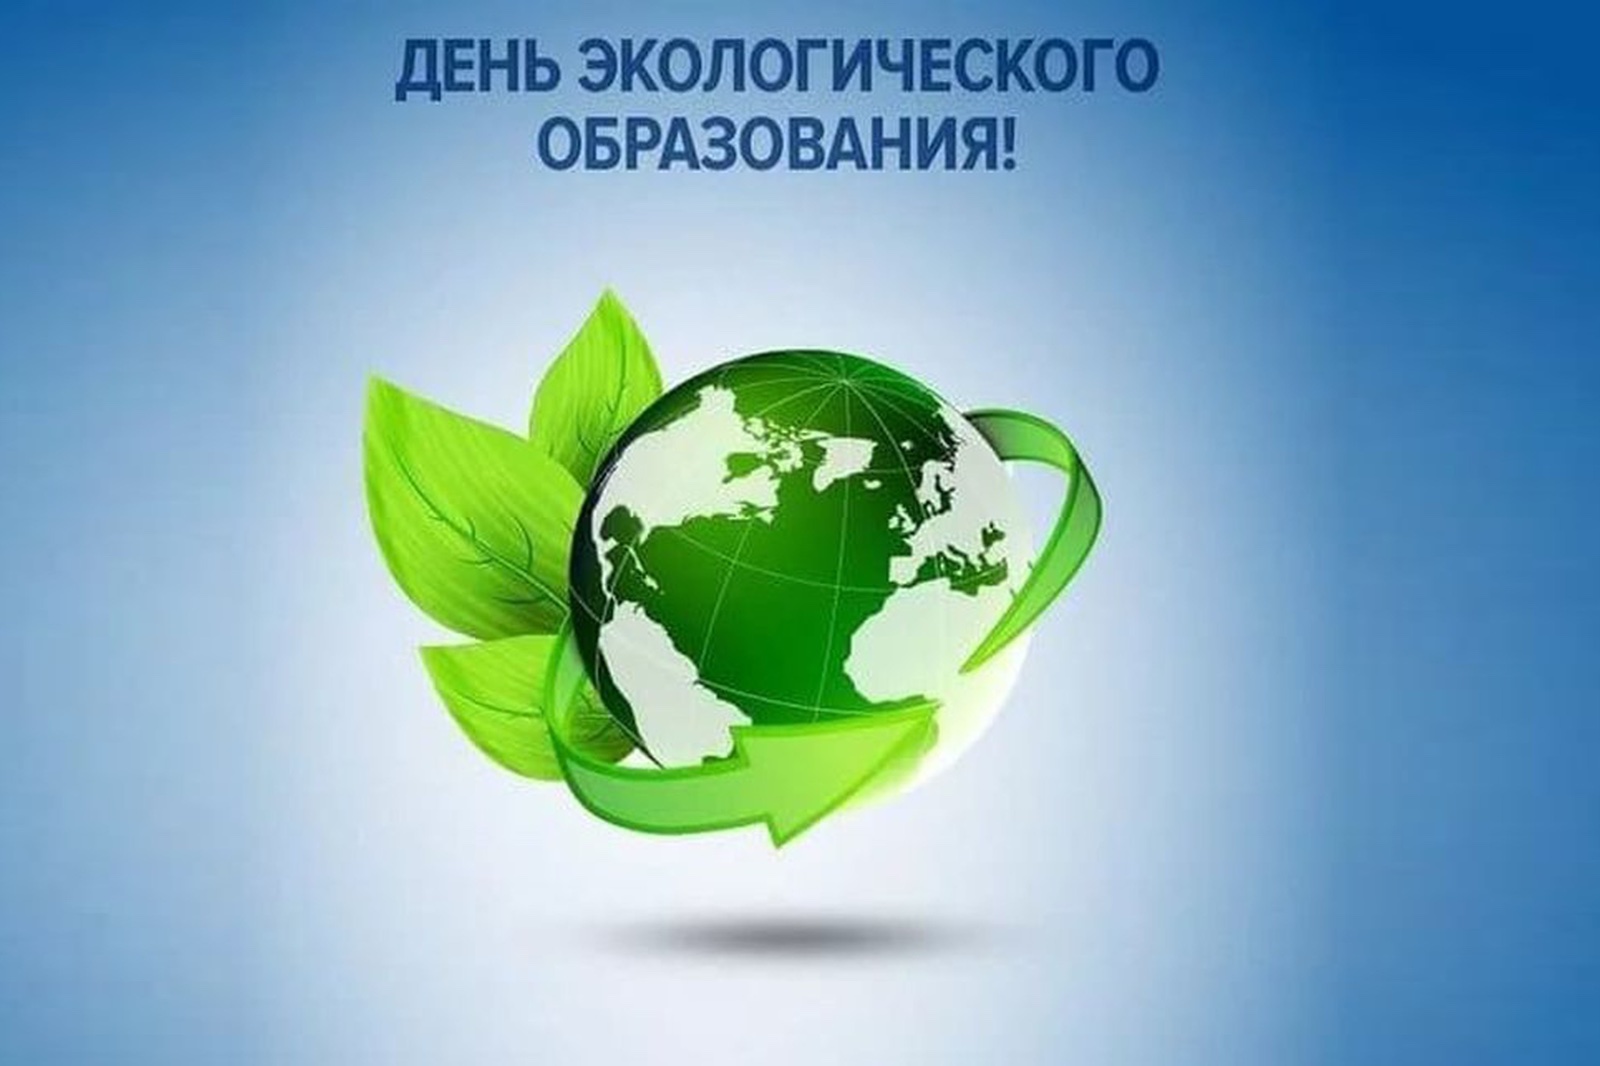 Всемирный день экологического образования.